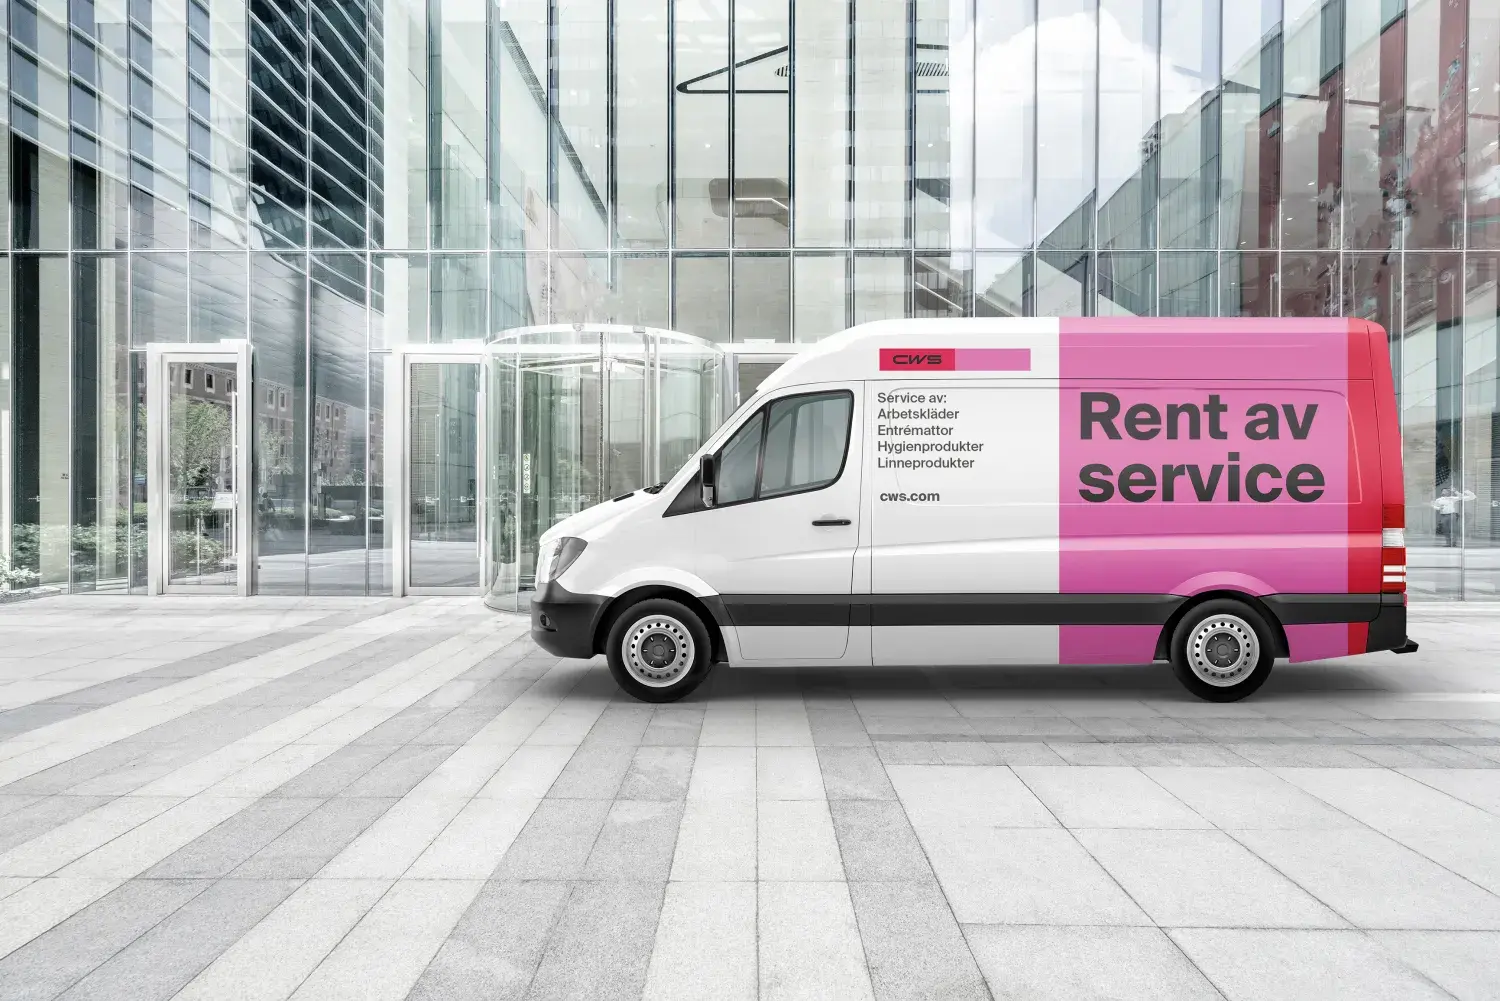 Bilder föreställer CWS servicebil med texten "Rent av service" 